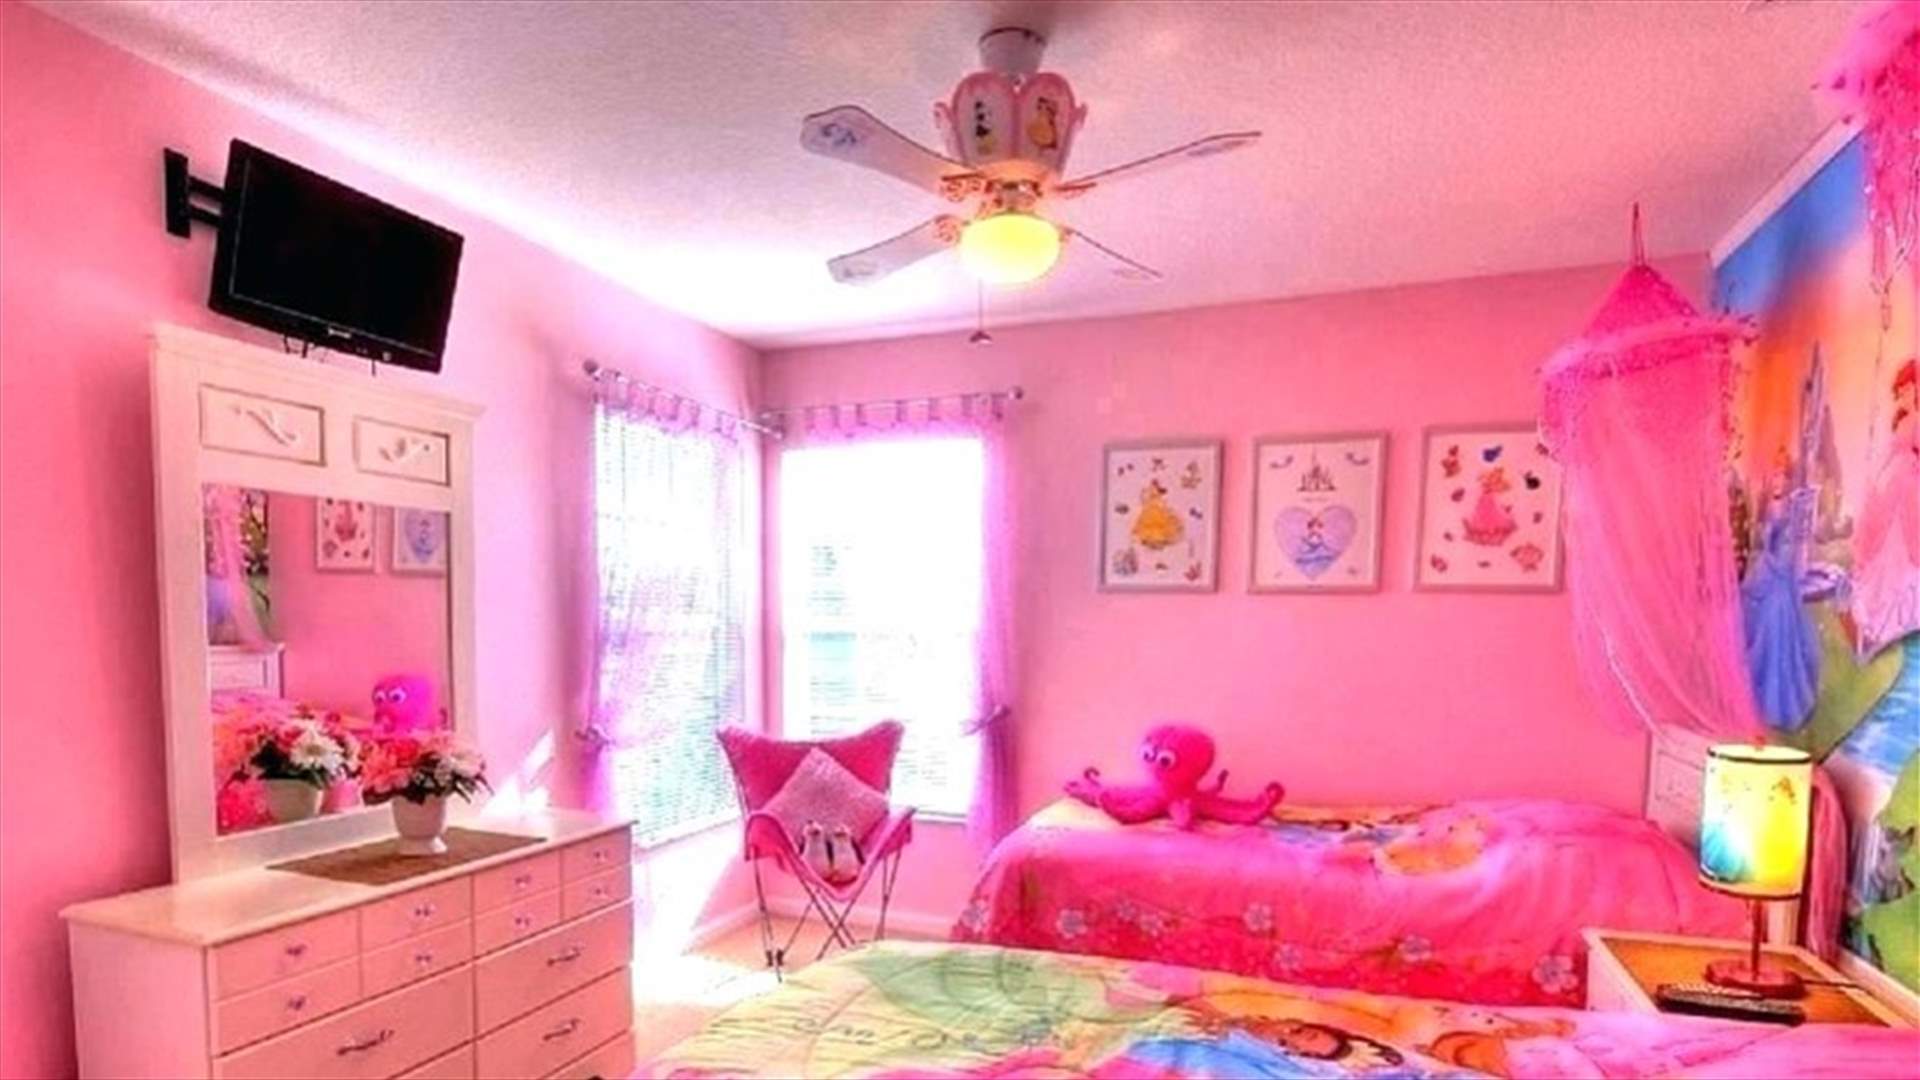 جدار في غرفة نوم طفلة صغيرة يلتقط إشارات راديو... وما من تفسيرٍ منطقي حتّى السّاعة